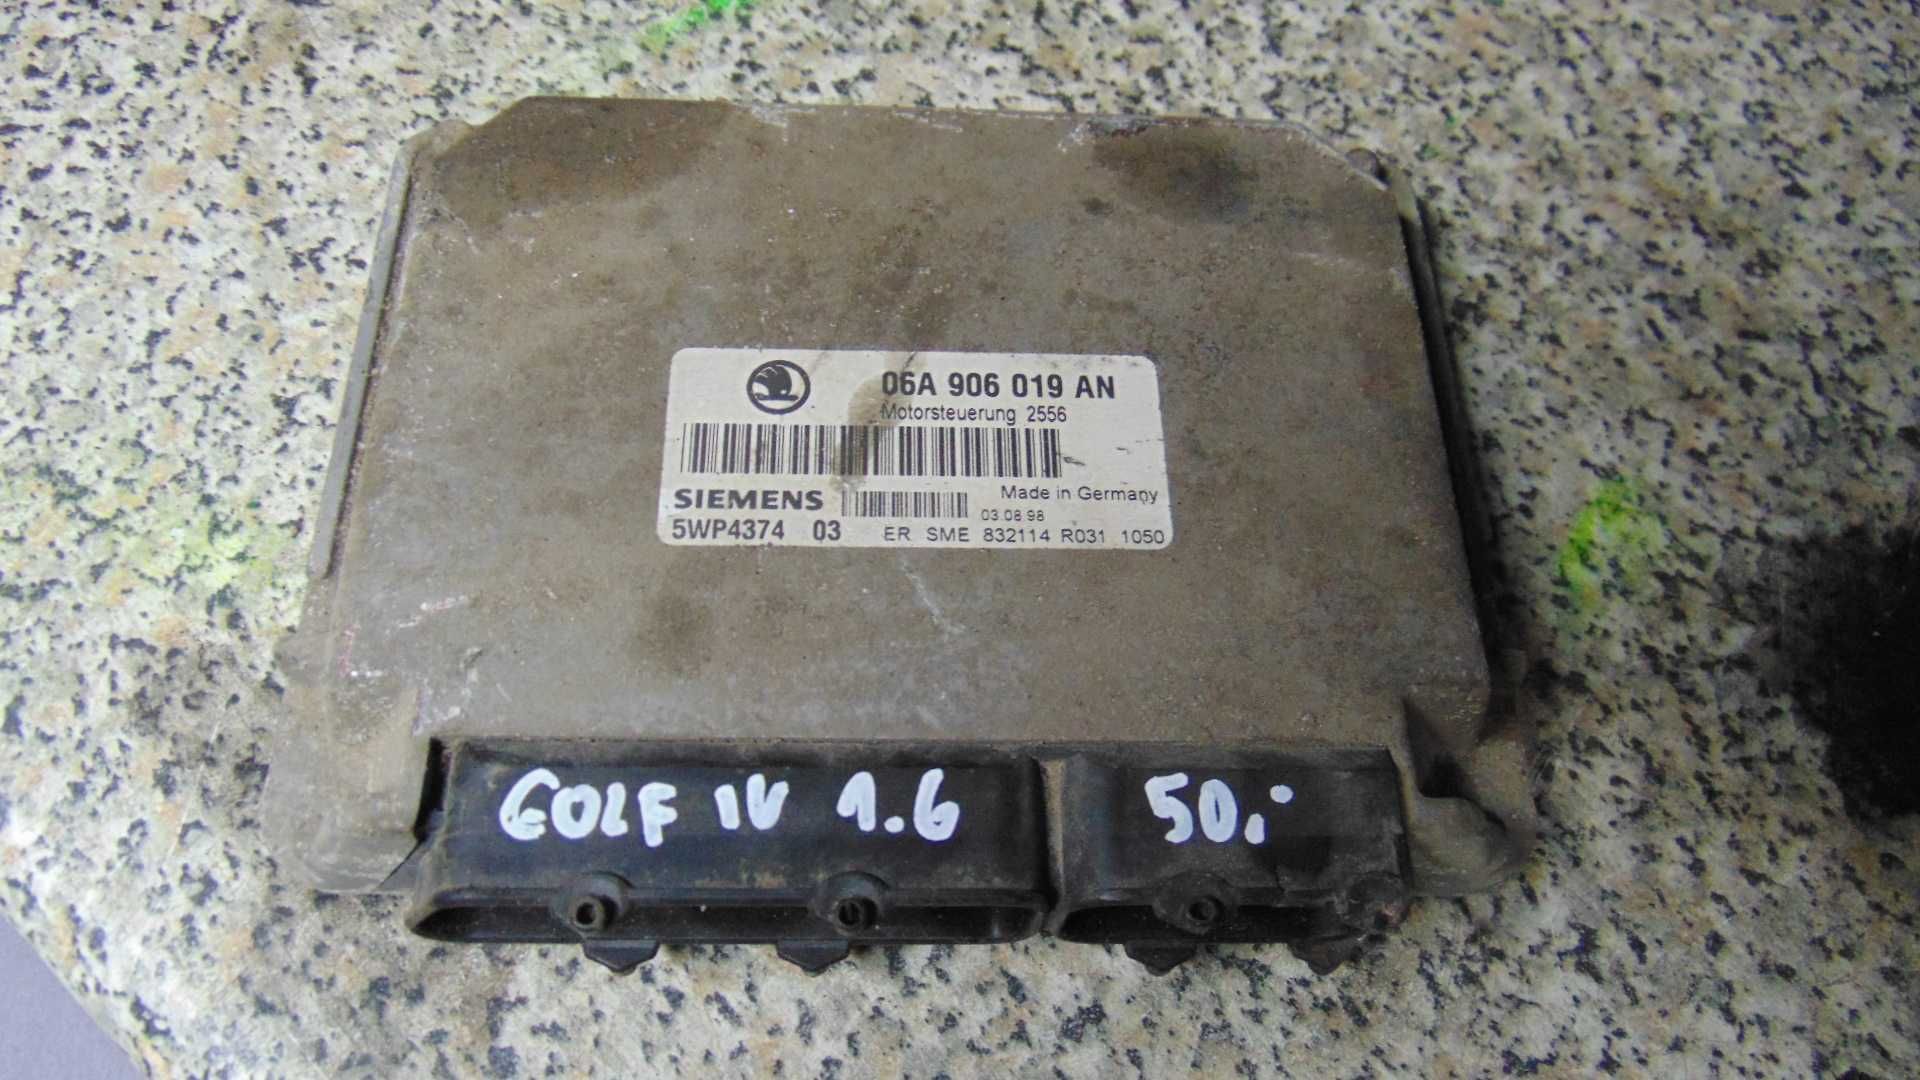 Lut4 Sterownik silnika komputer Volkswagen golf IV 1.6 wysyłka części